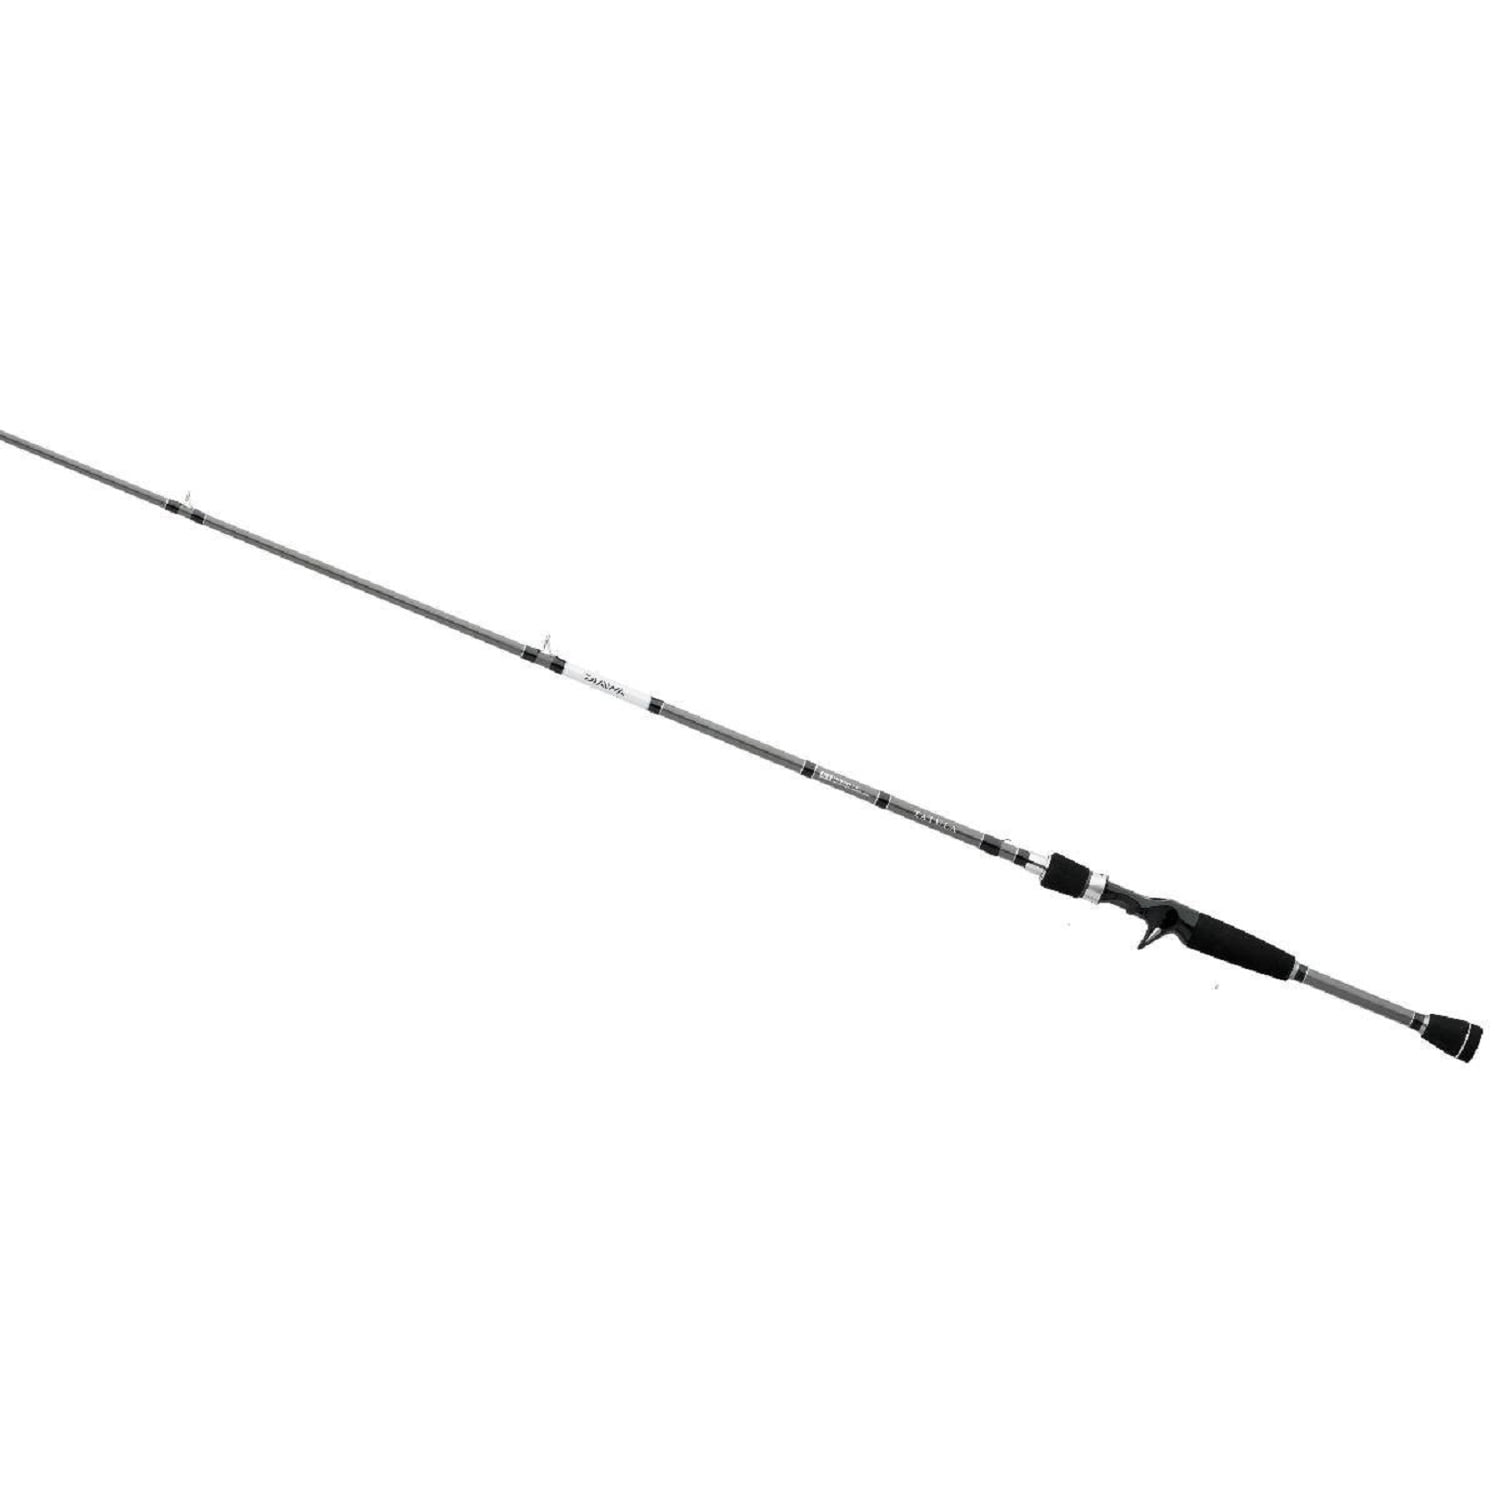 1 Piece Rod Daiwa Bass Fishing Baitcasting Rods Daiwa Tatula Casting Rods 